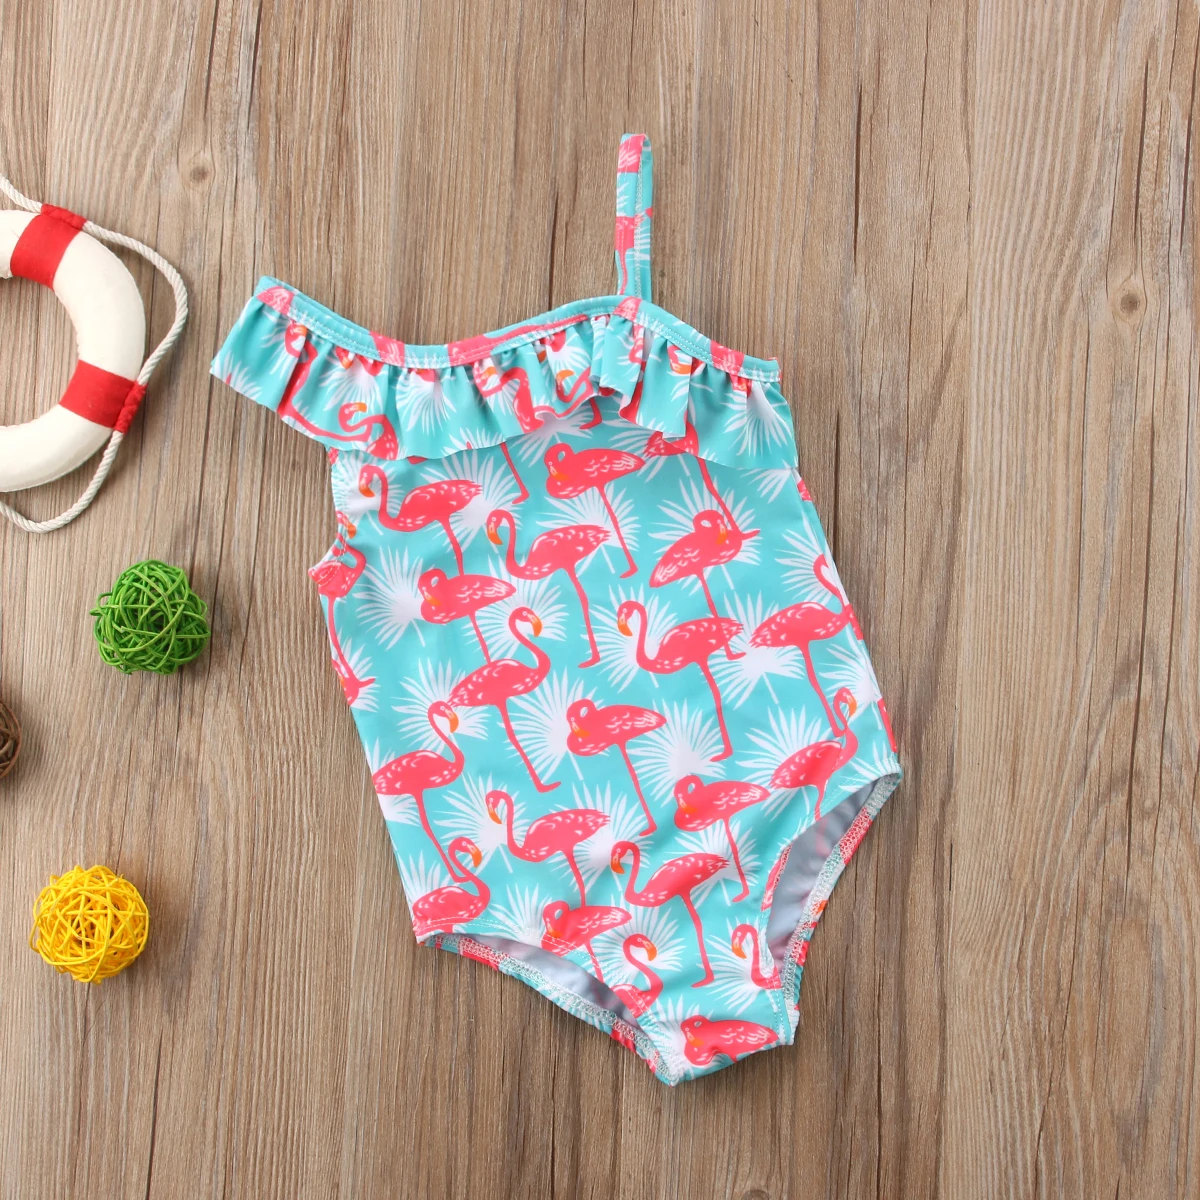 Одежда для малышей Детская одежда для девочек боди с изображениями Фламинго женский купальник ванный комплект пляжная одежда на одно плечо комбинезон с птицами